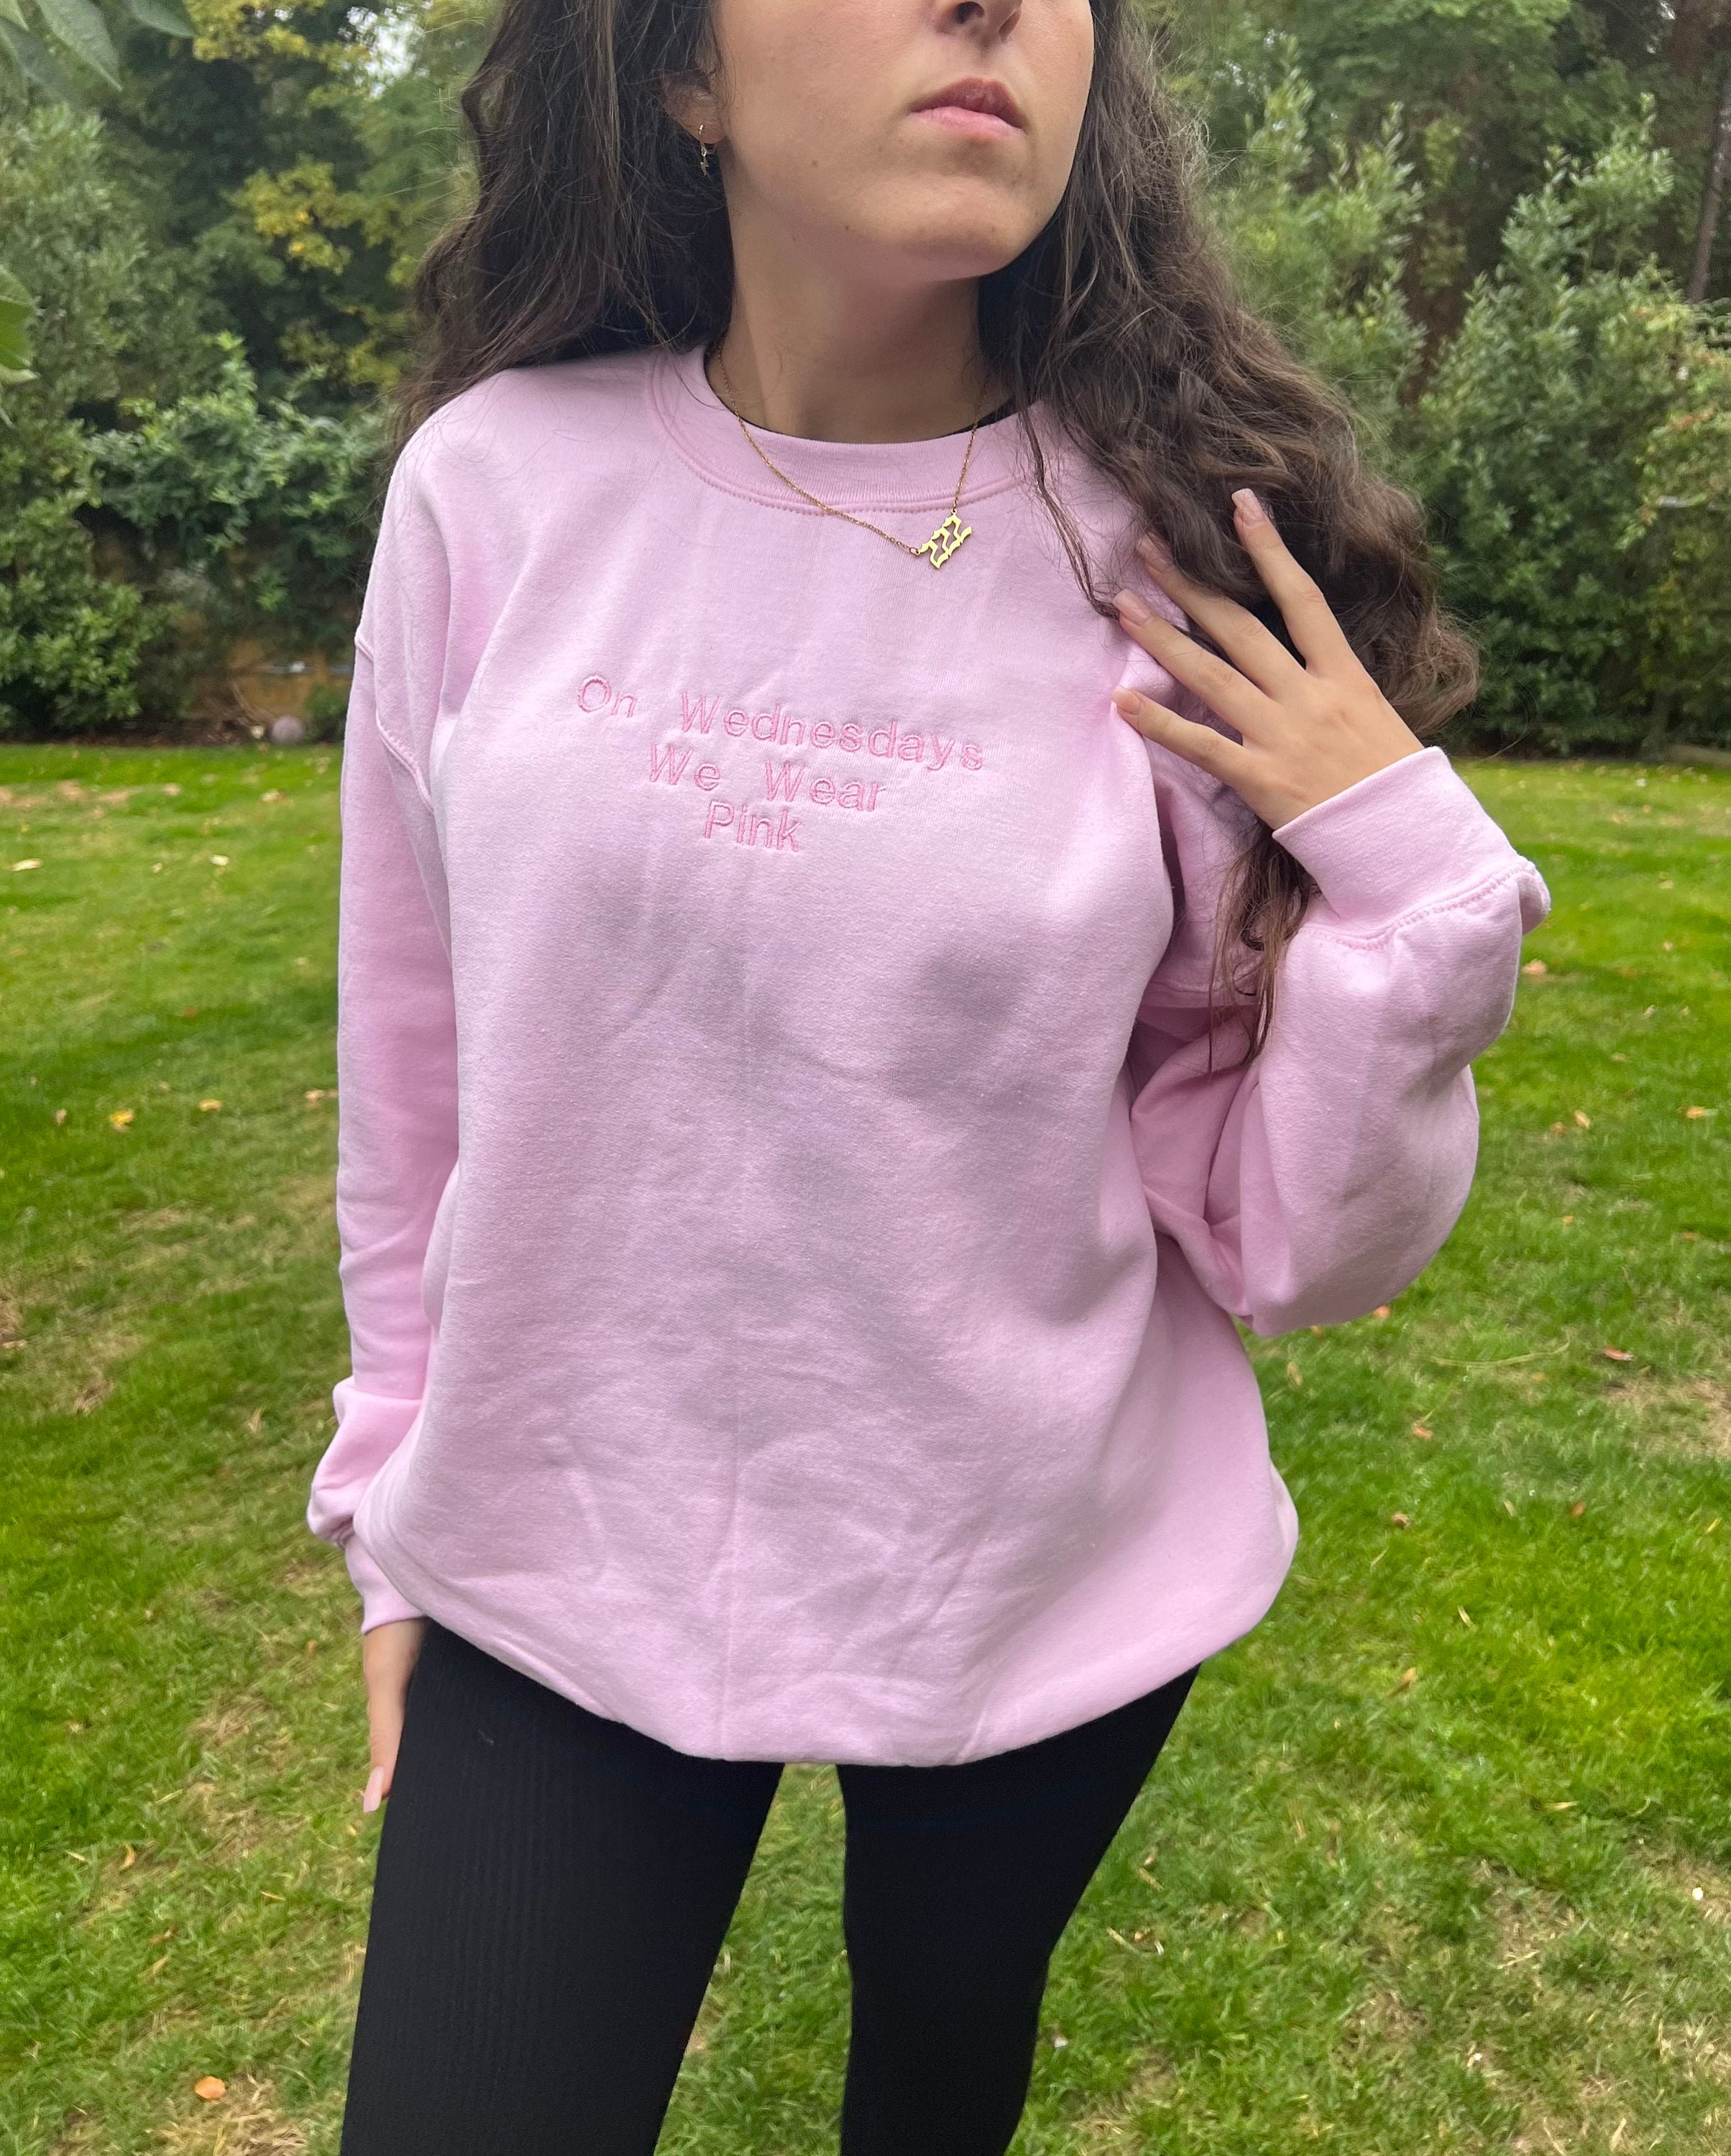  Mean Girls We Wear Pink On Wednesdays Sweatshirt